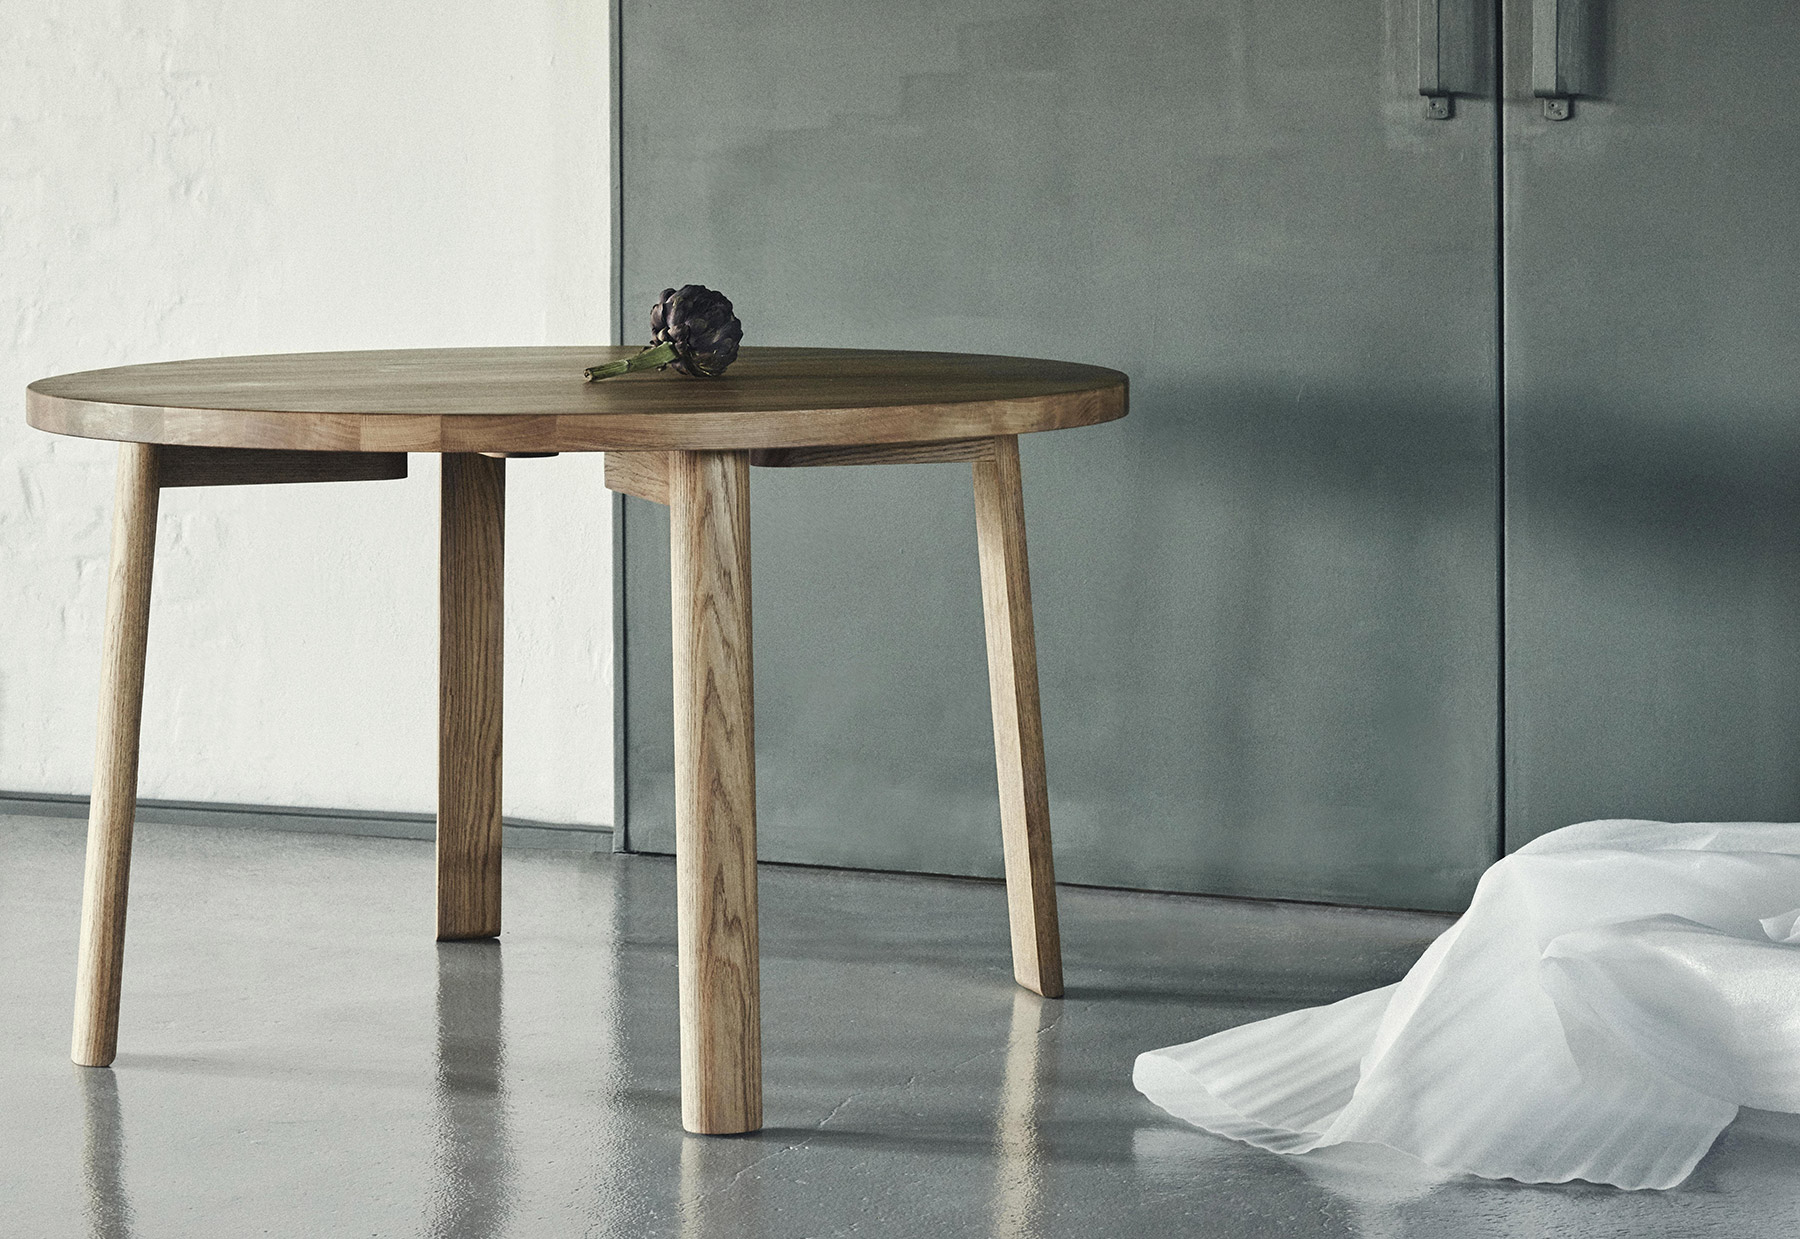 Ease Lounge Table by Terkel Skou Steffensen for Million